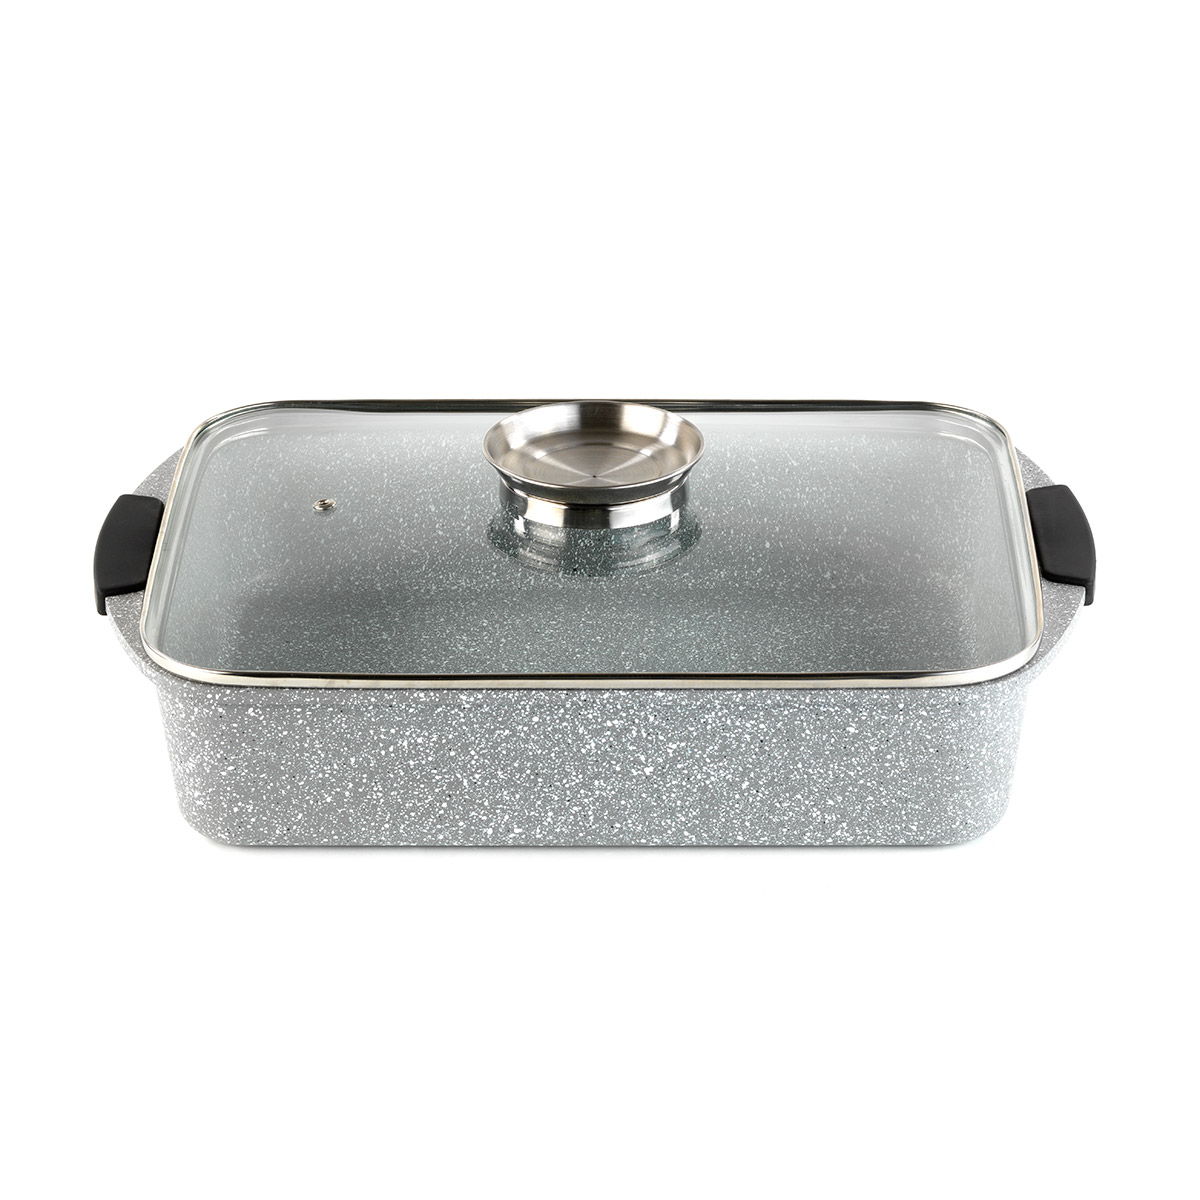 Baking pan with Lid – Mopita